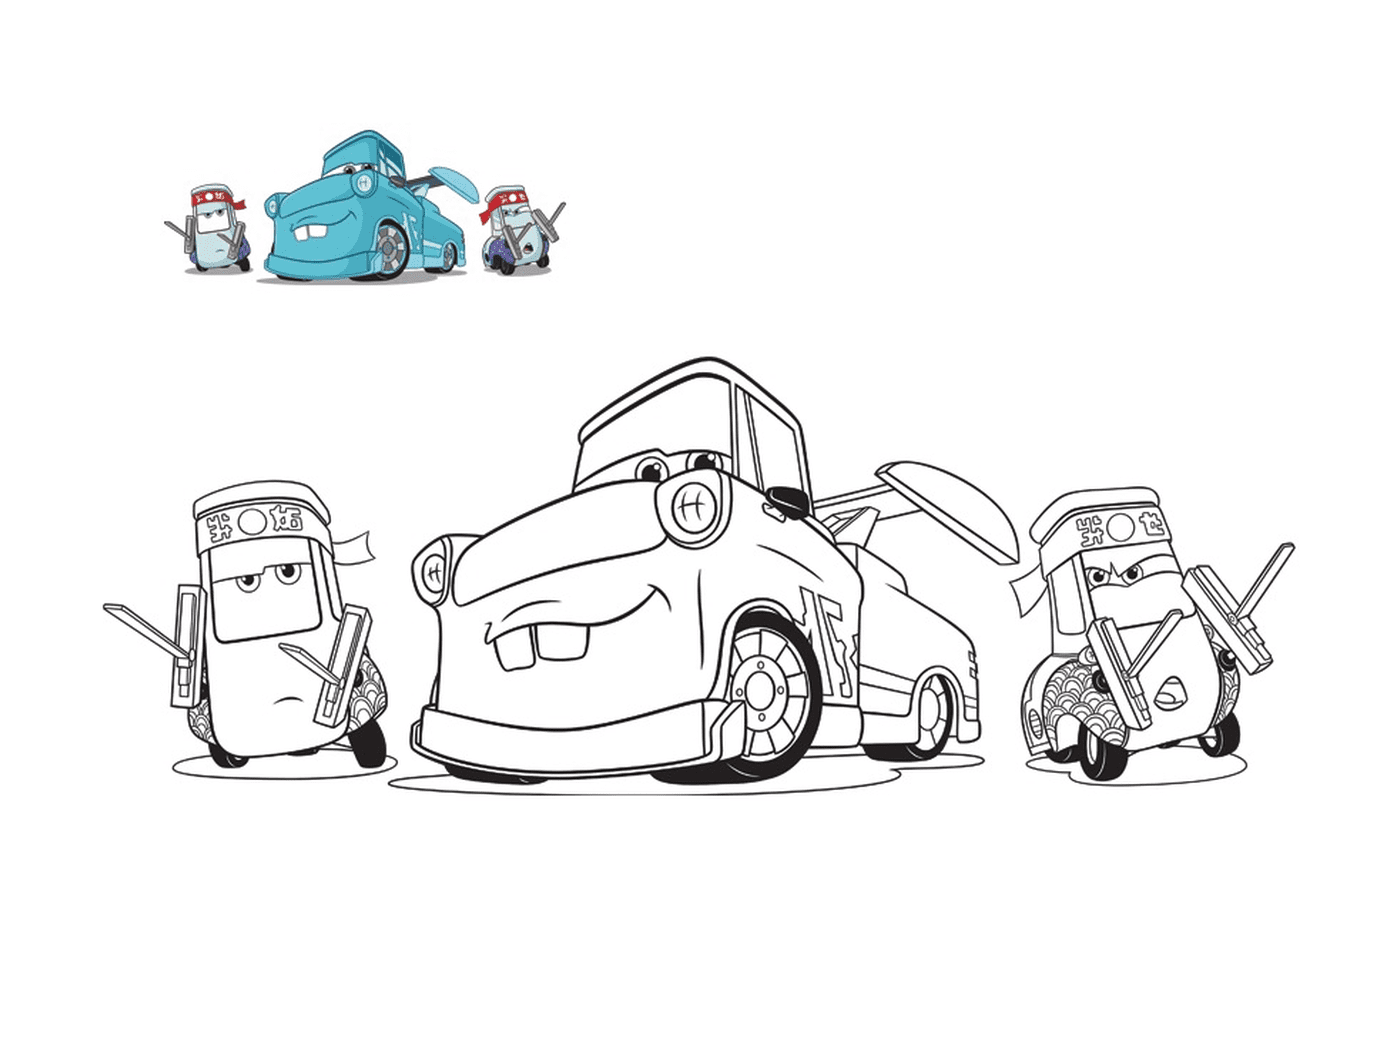  Auto 3, Guido e i suoi amici, carro attrezzi meccanici, linea di un'auto con un'auto sul pavimento 